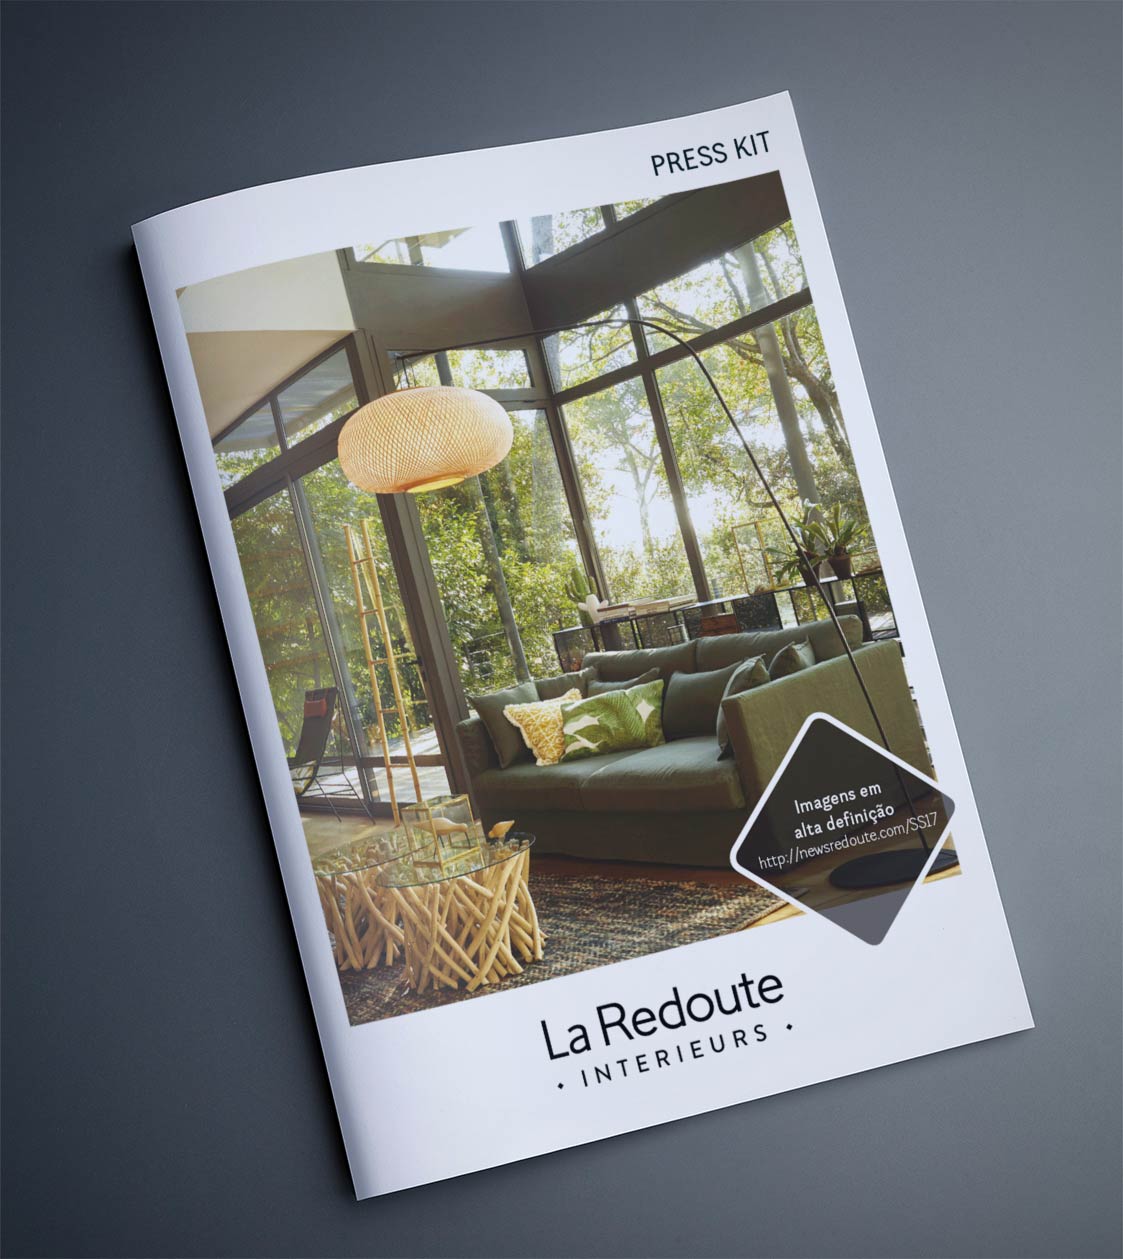 Catálogo La Redoute realizado pela Proeasy Design